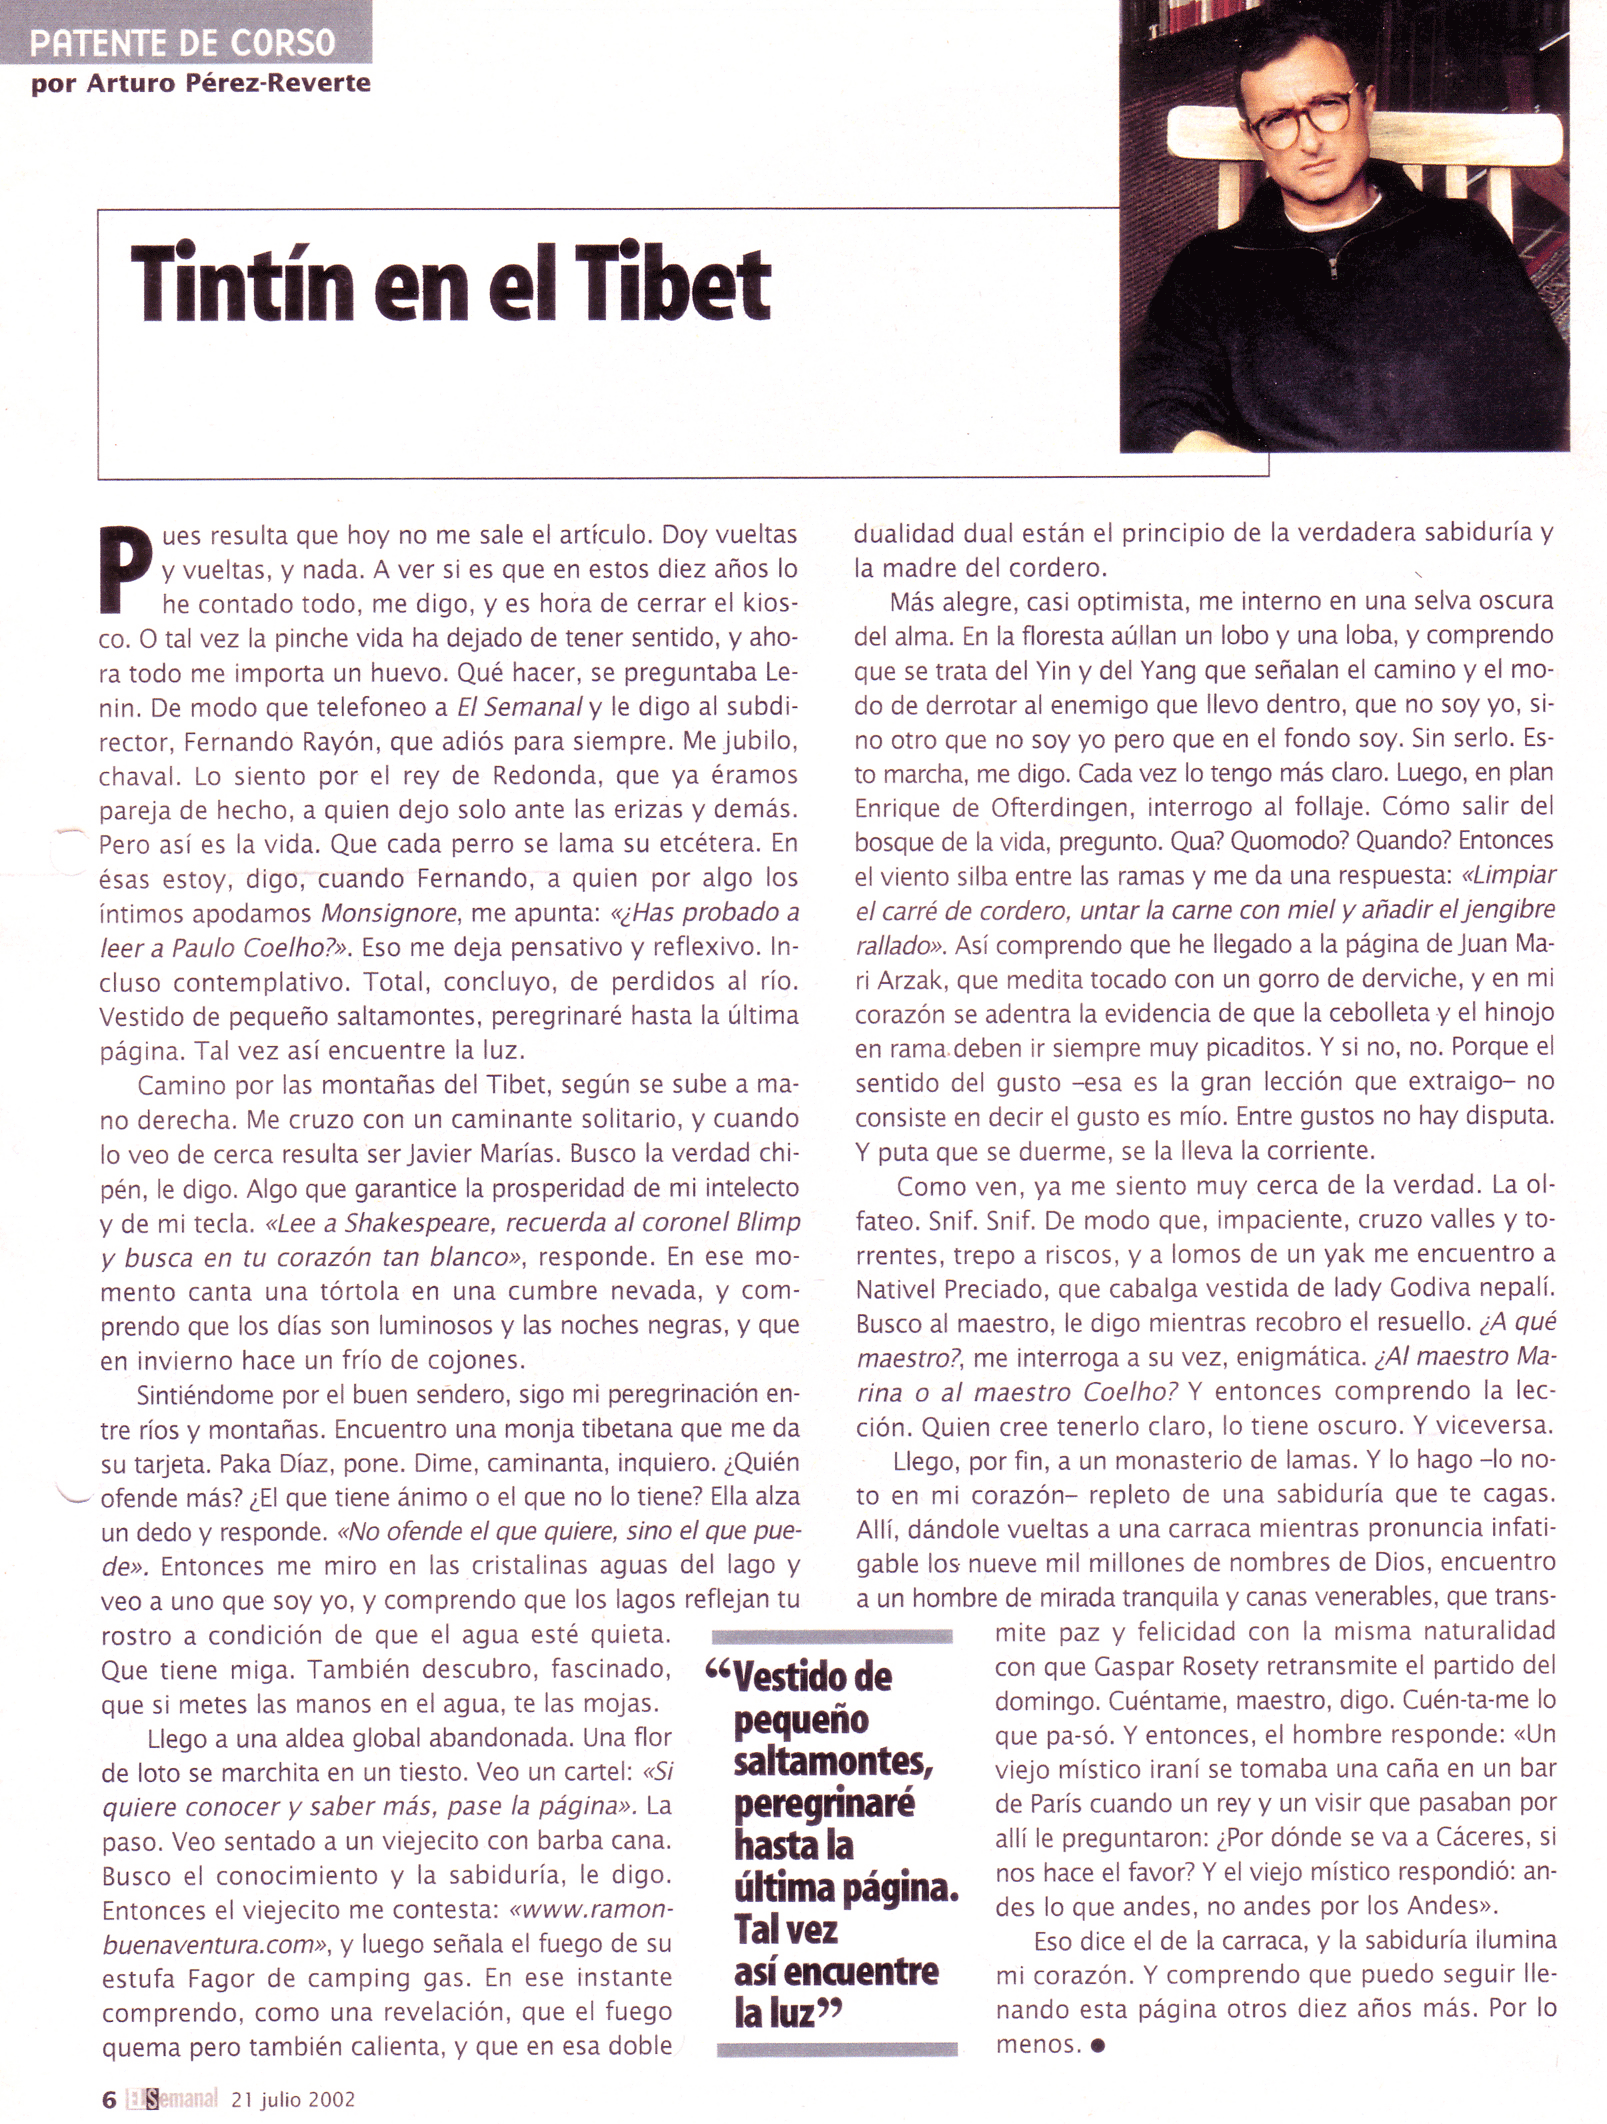 "Tintín en el Tibet" El Semanal 21 de julio de 2002